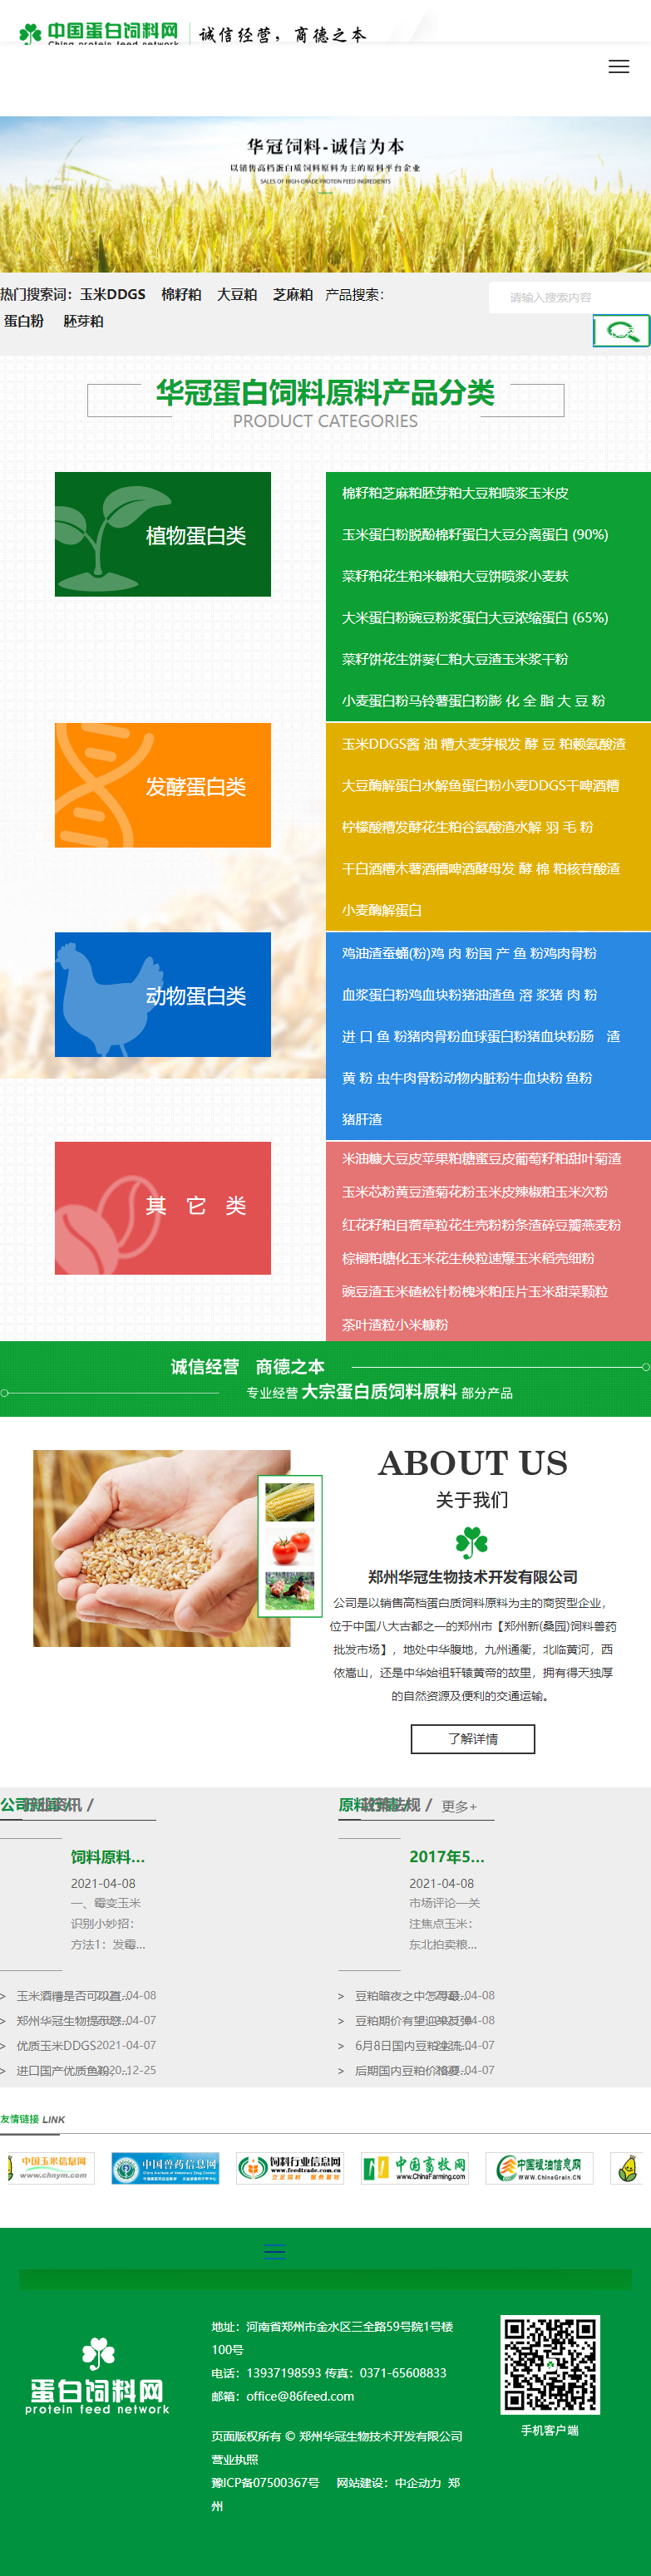 郑州华冠生物技术开发有限公司网站案例